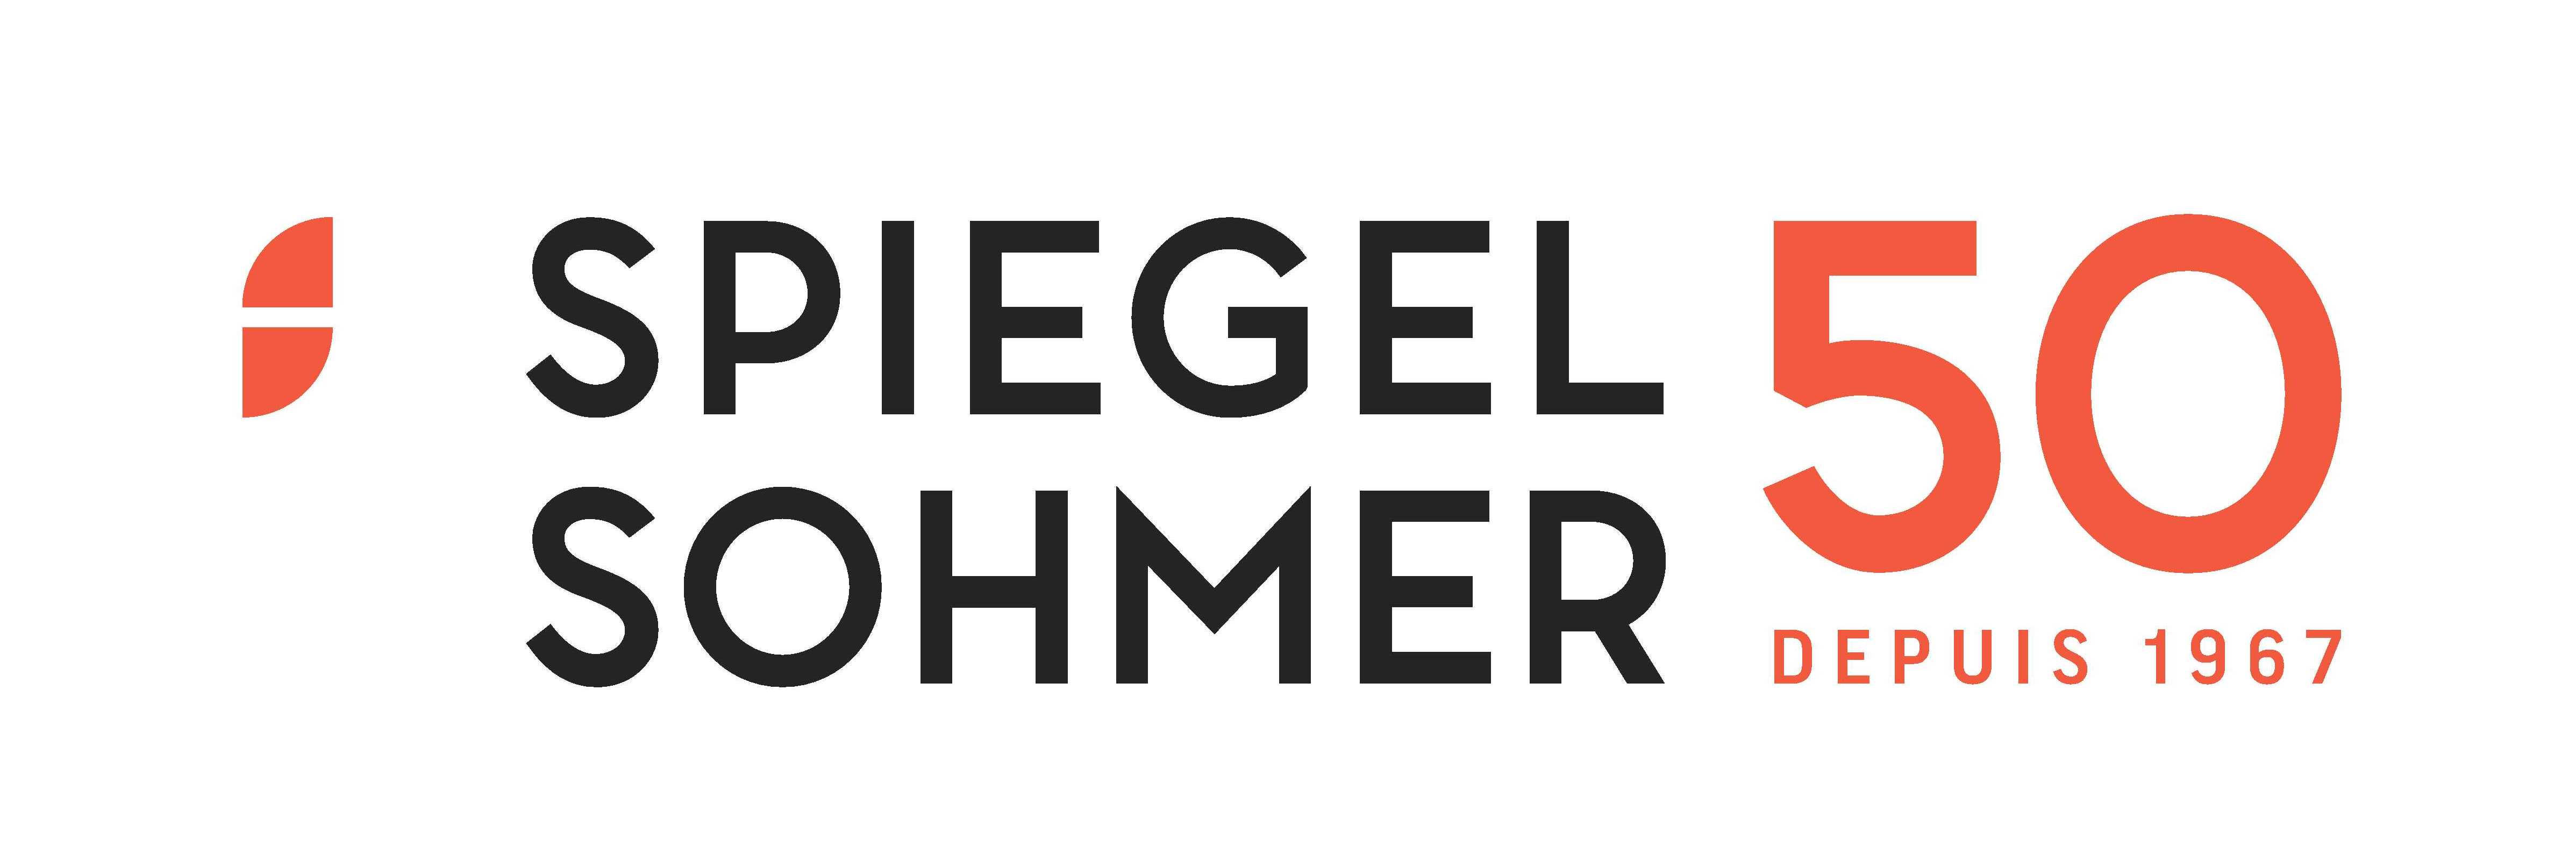 Spiegel Sohmer Inc.